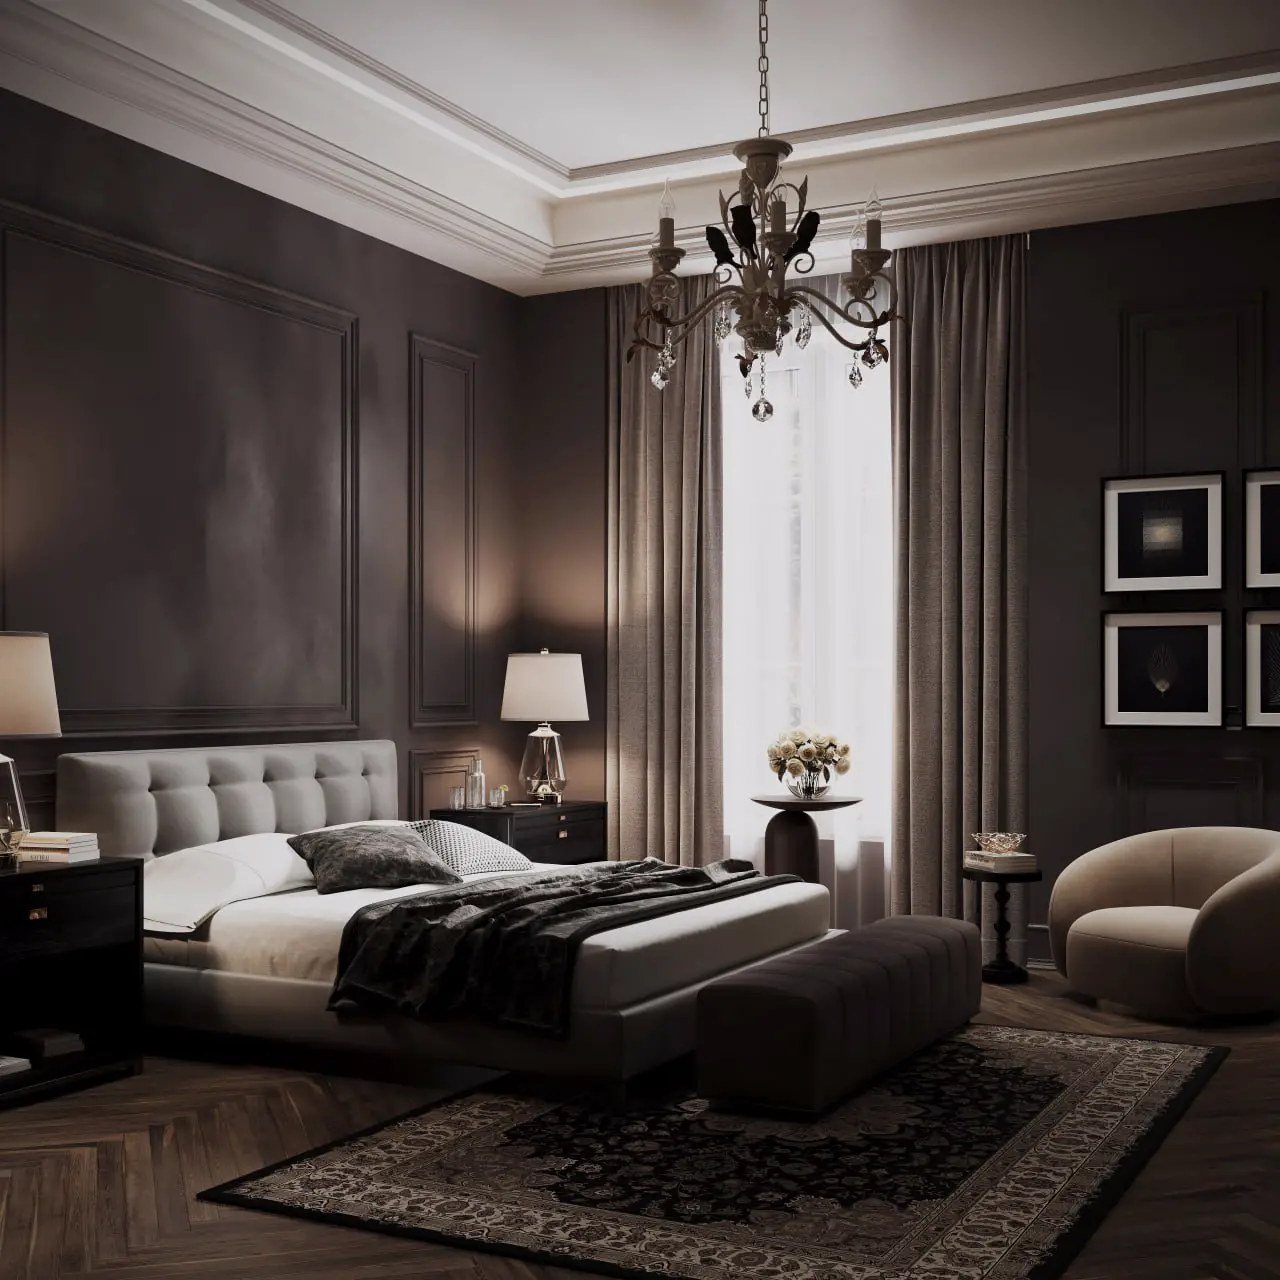 Сlassy dark bedroom 3D render